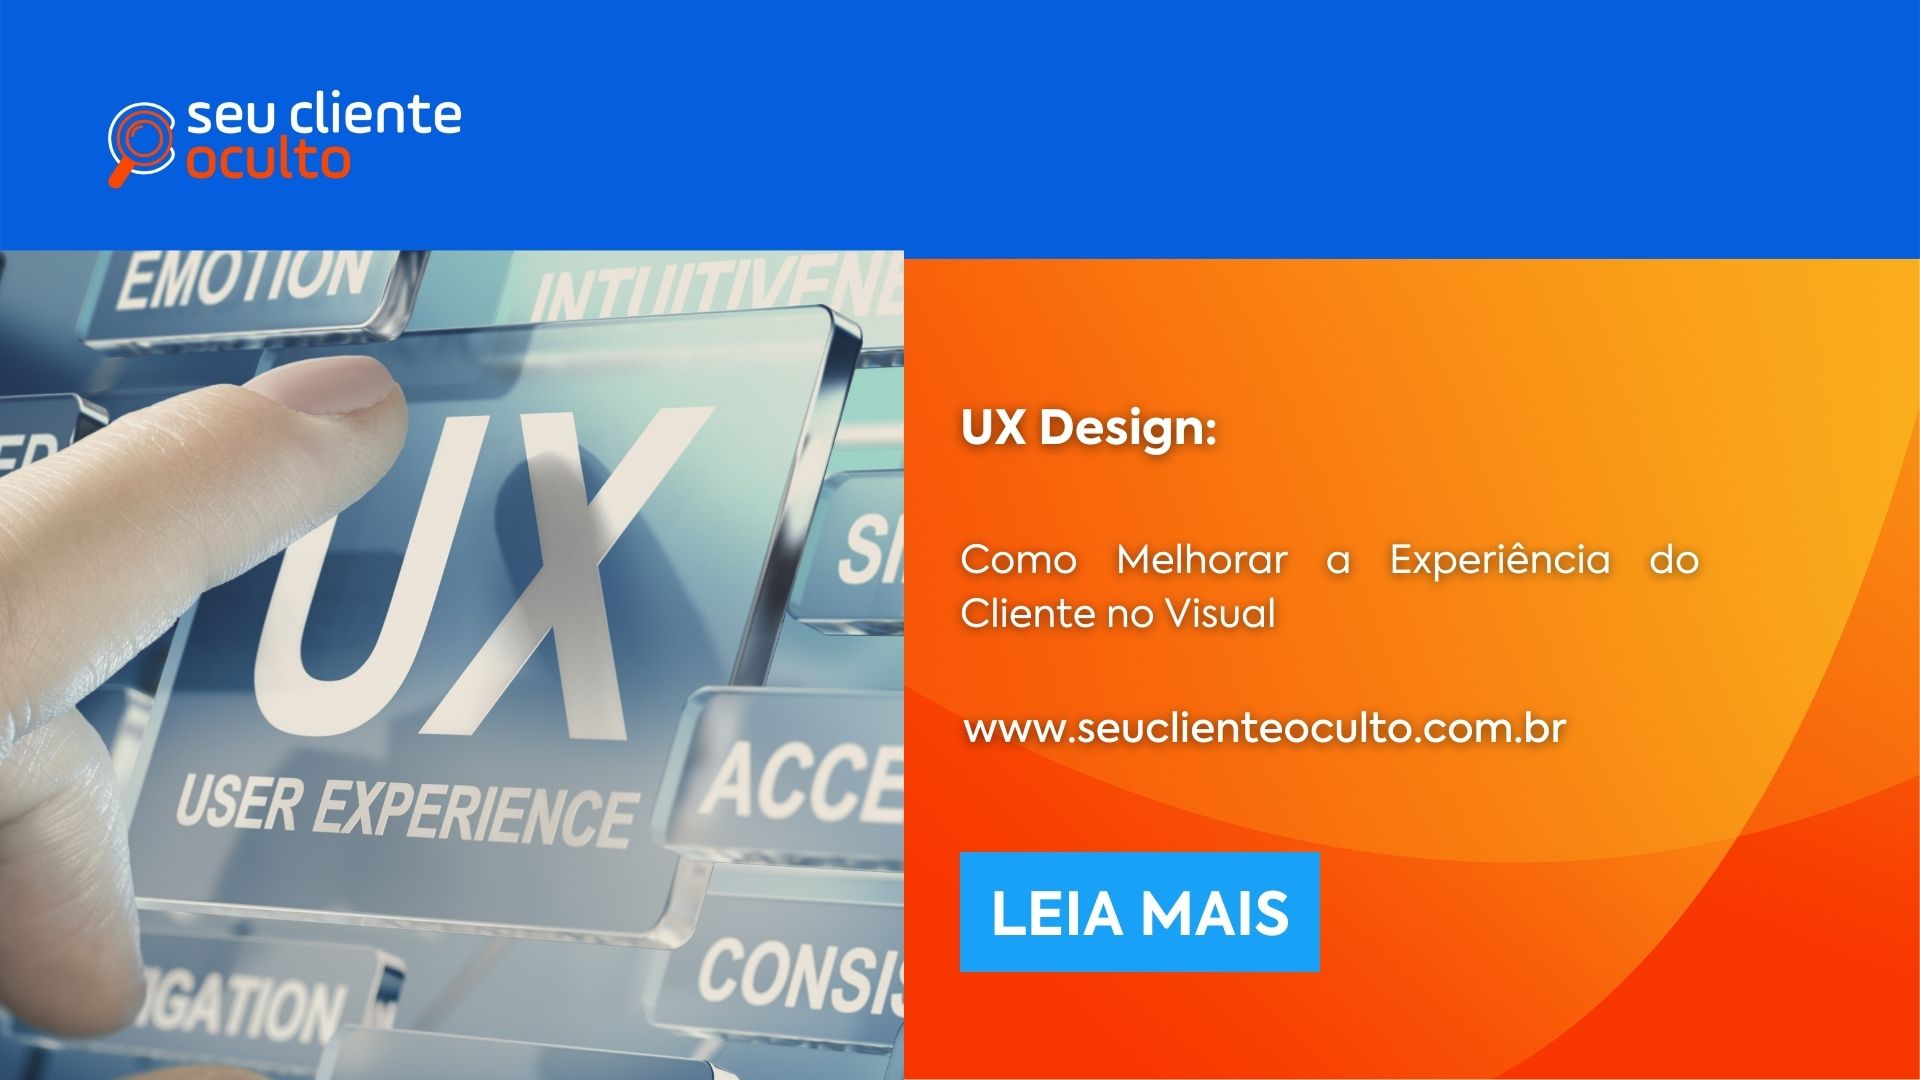 UX Design: Como Melhorar a Experiência do Cliente no Visual - Seu Cliente Oculto